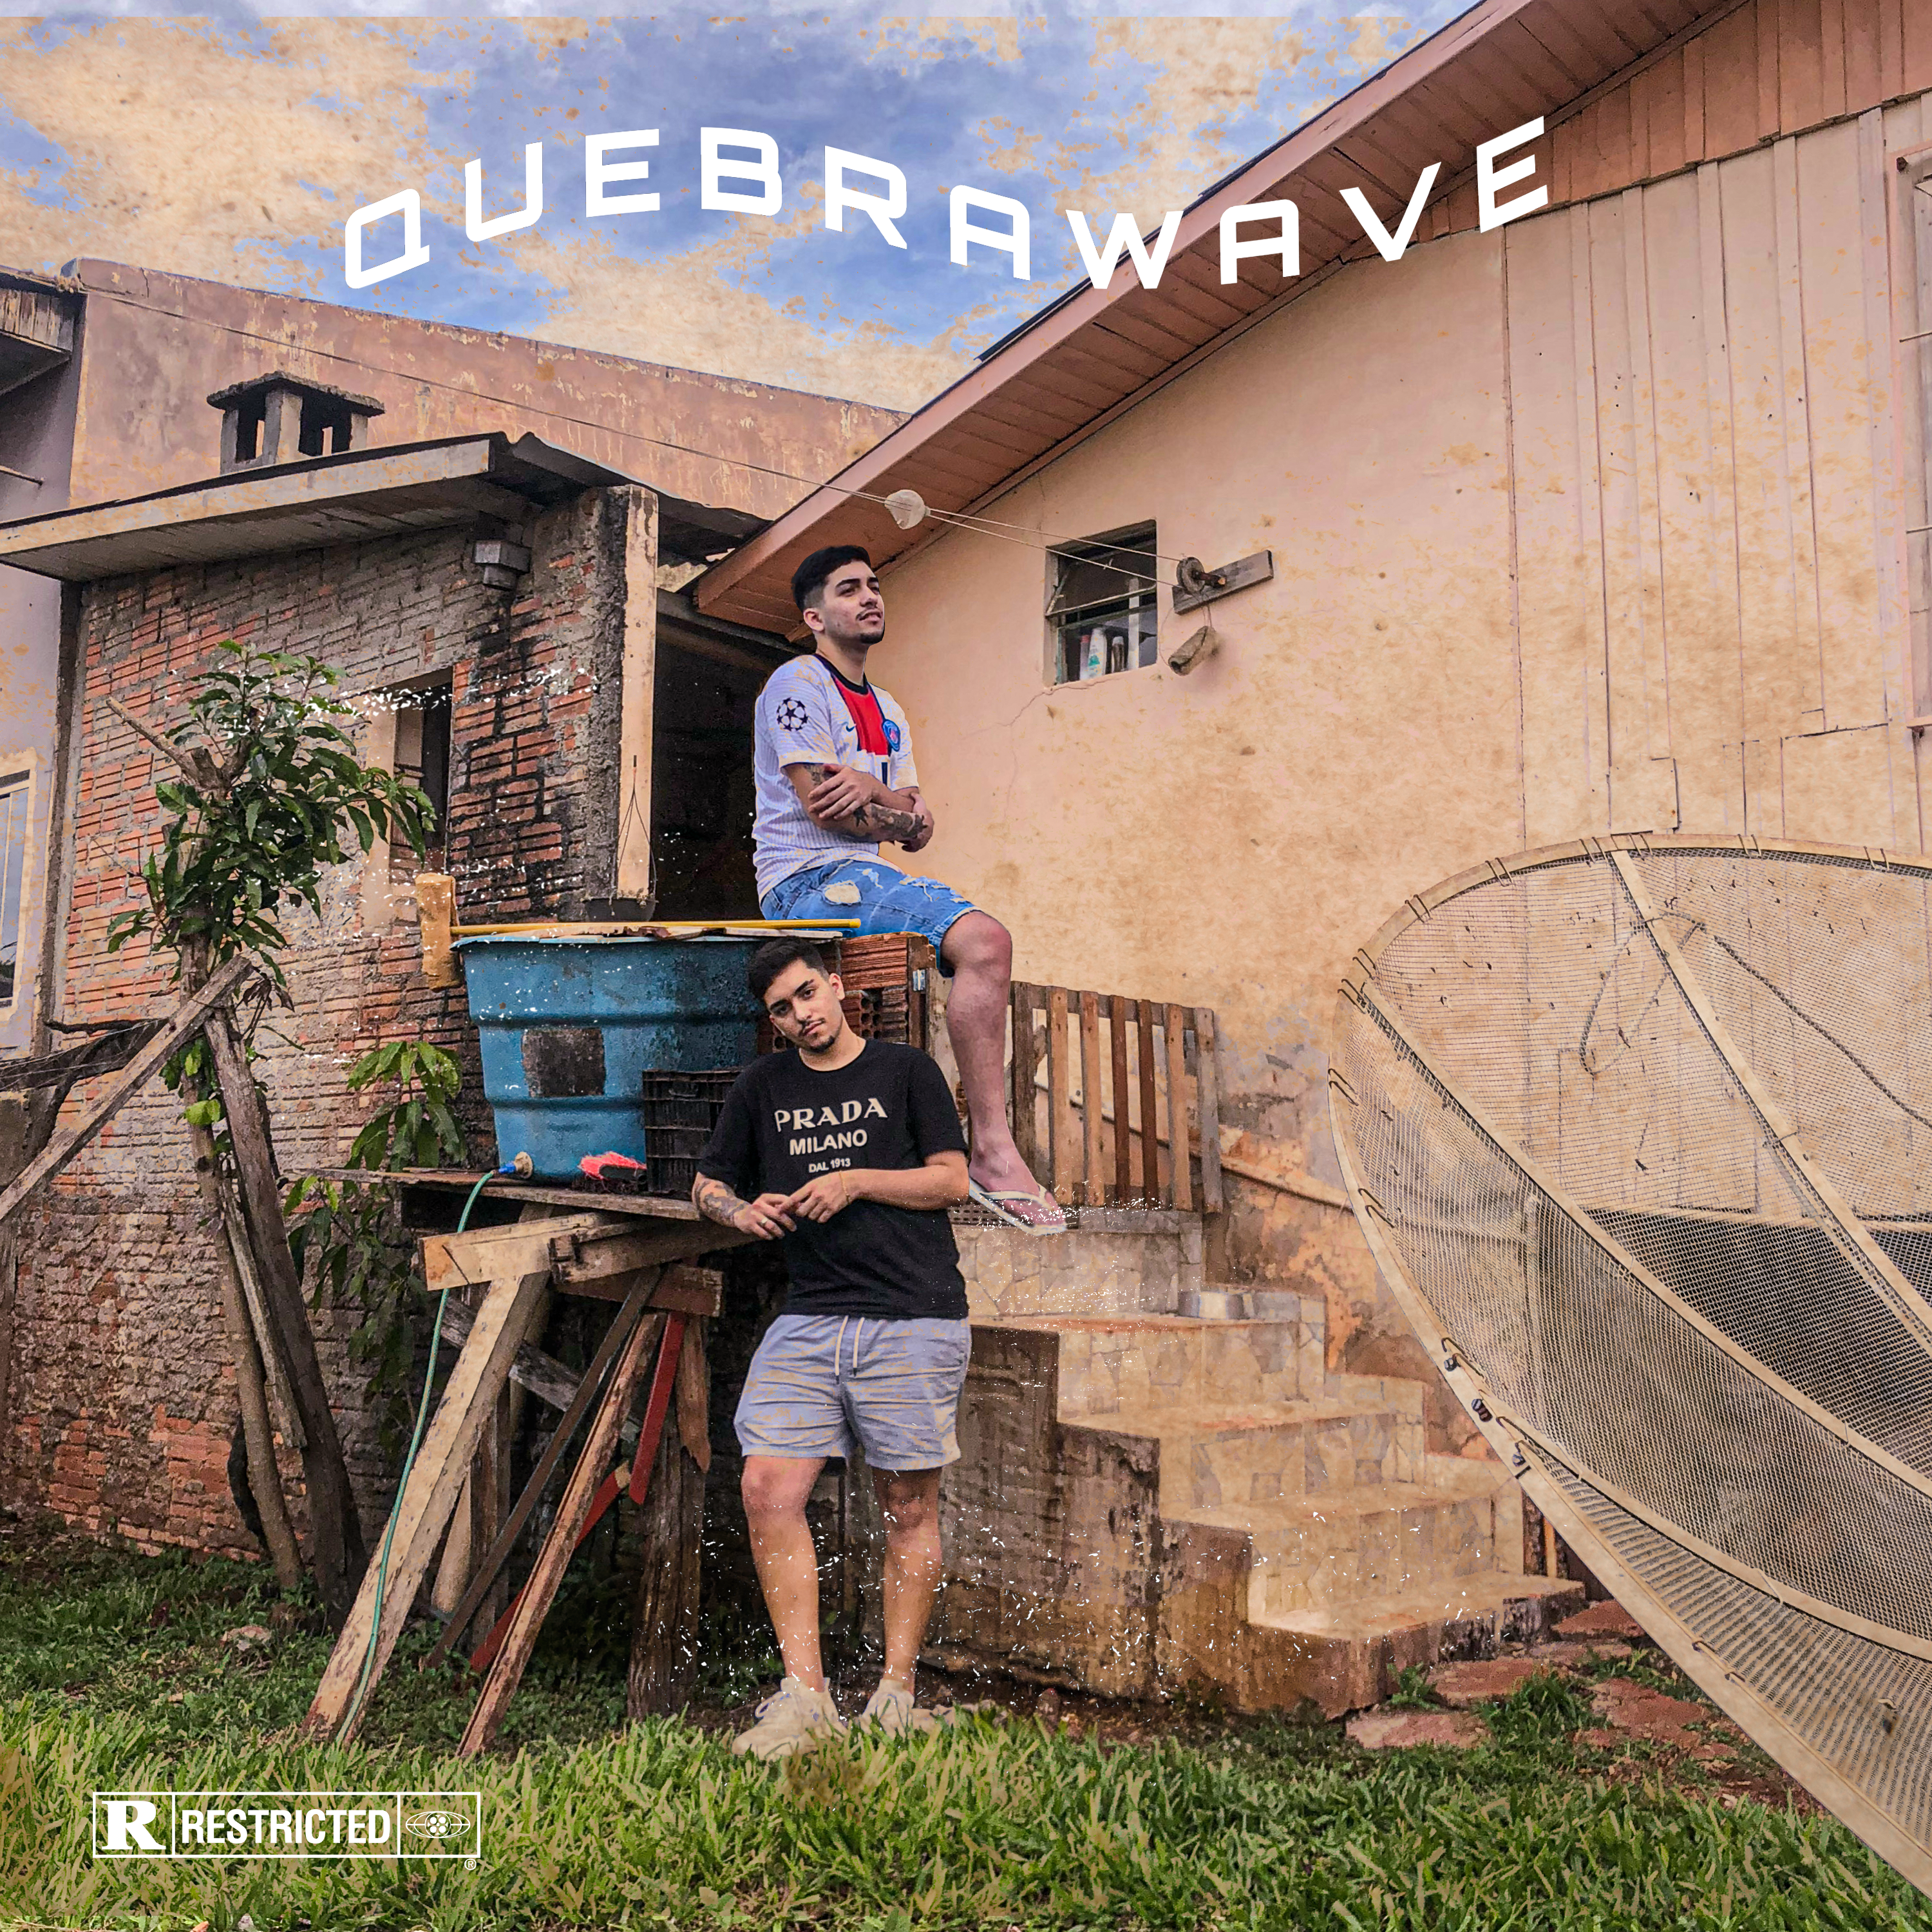 Vi100te lança EP “Quebrawave”, projeto visa enaltecer sua quebrada e a cena local